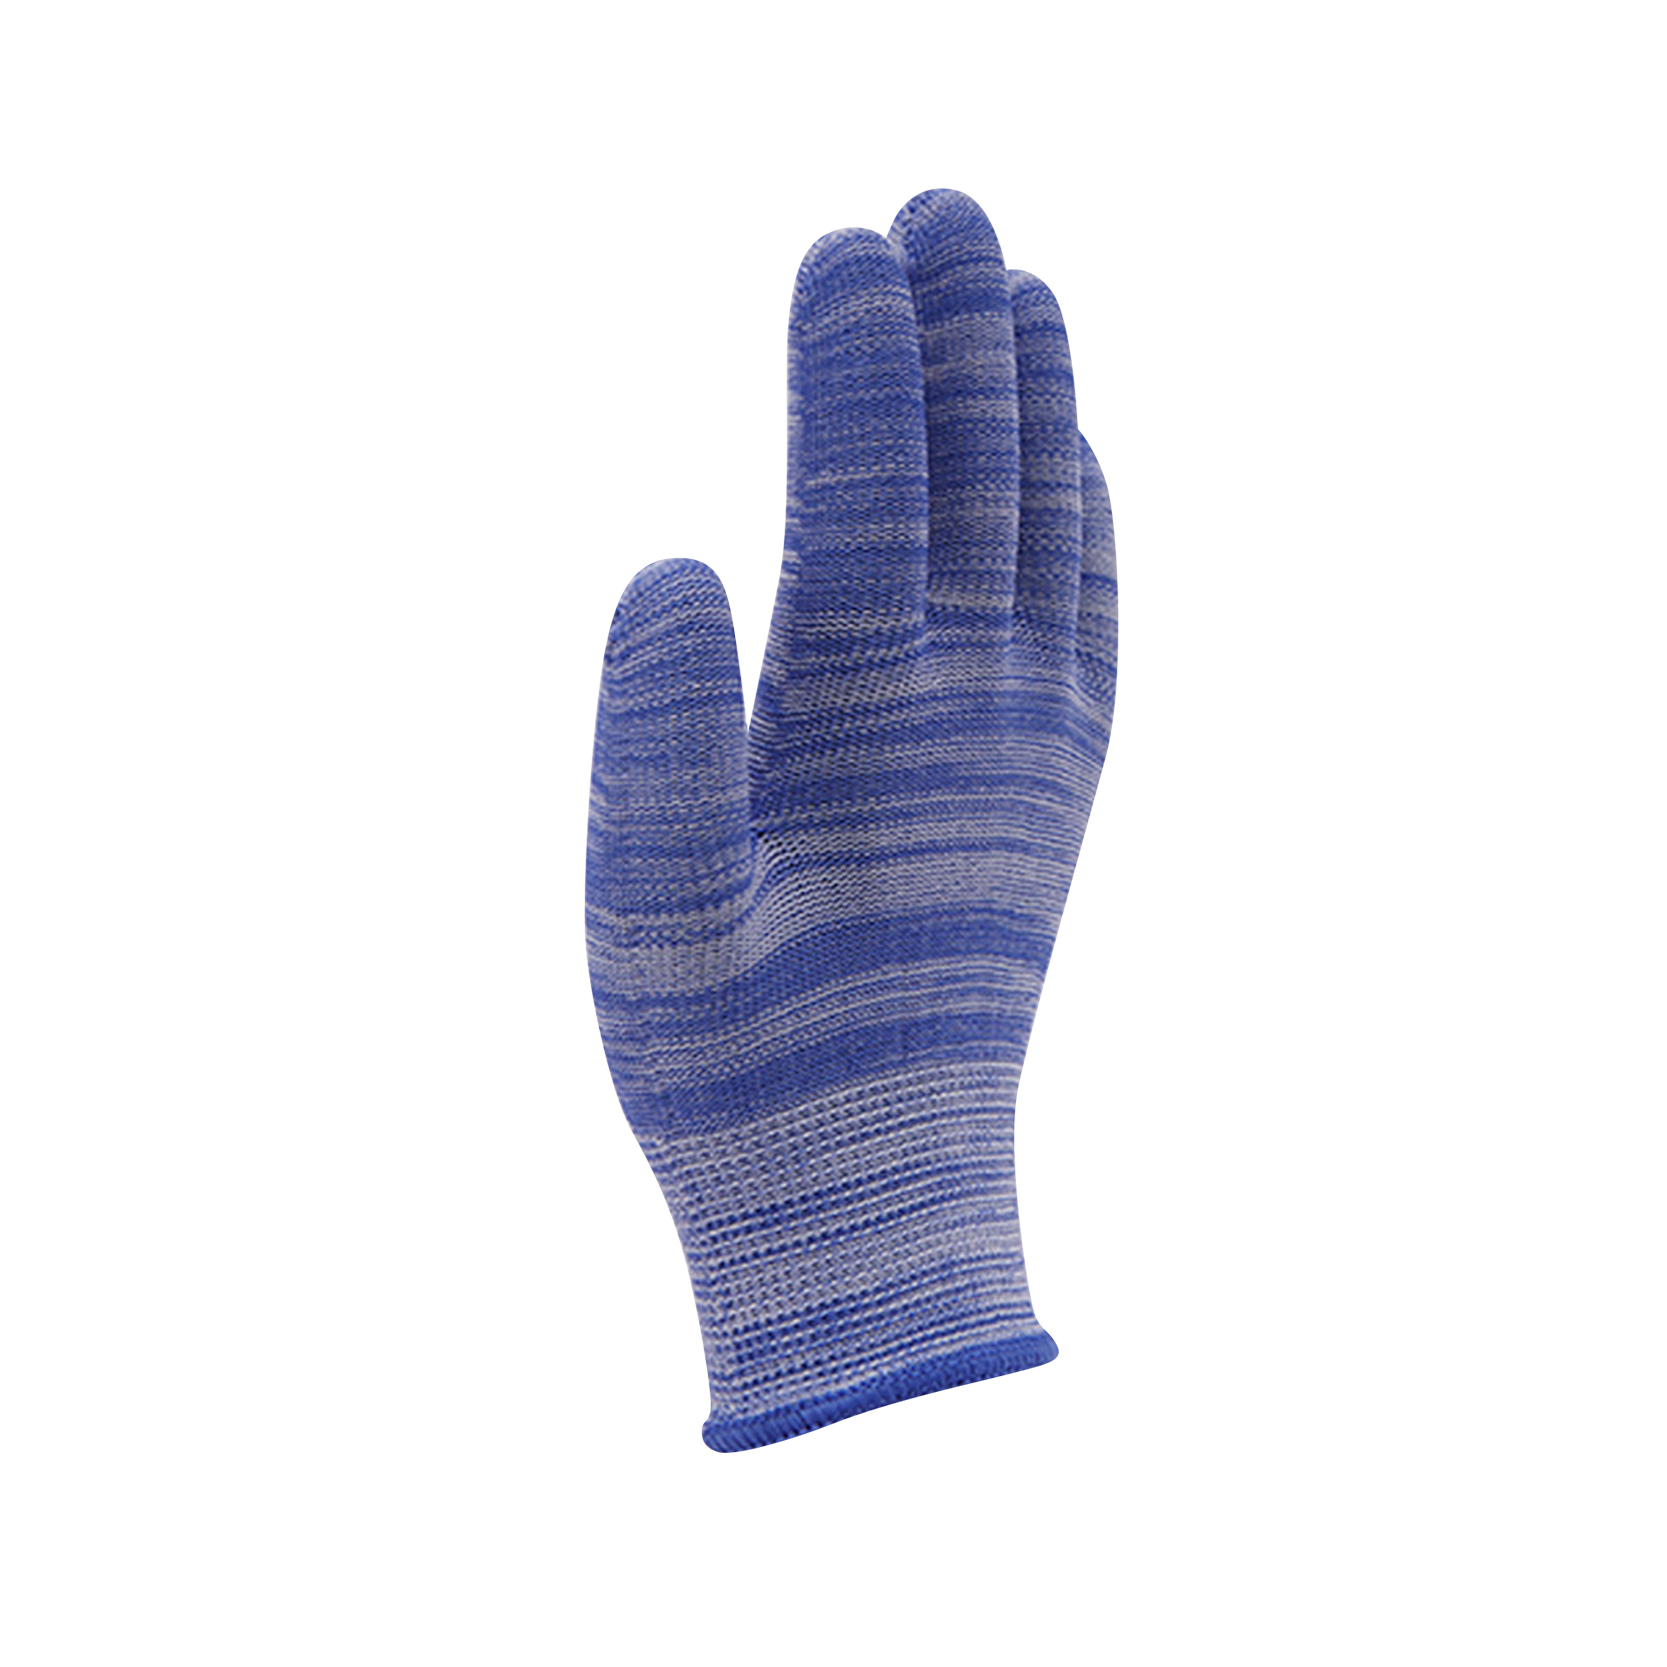 Viacfarebné ochranné pletené rukavice.Rukavice na bežné závažie.Pletené bavlnené polyesterové rukavice pre všeobecné použitie